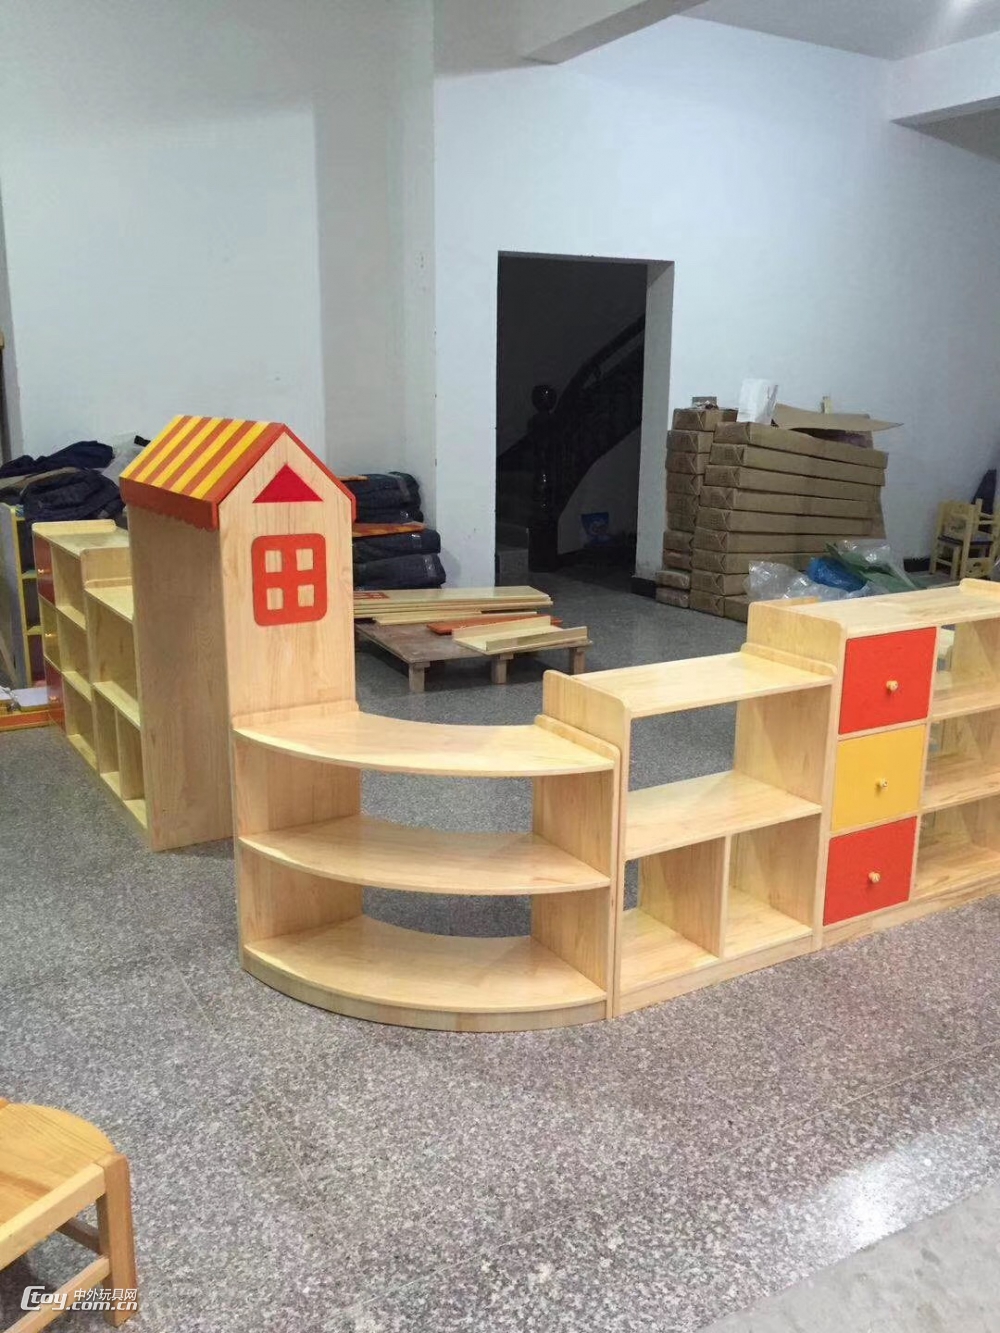 广西来宾批发供应书架组合书柜 实木玩具柜 广西幼儿家具厂